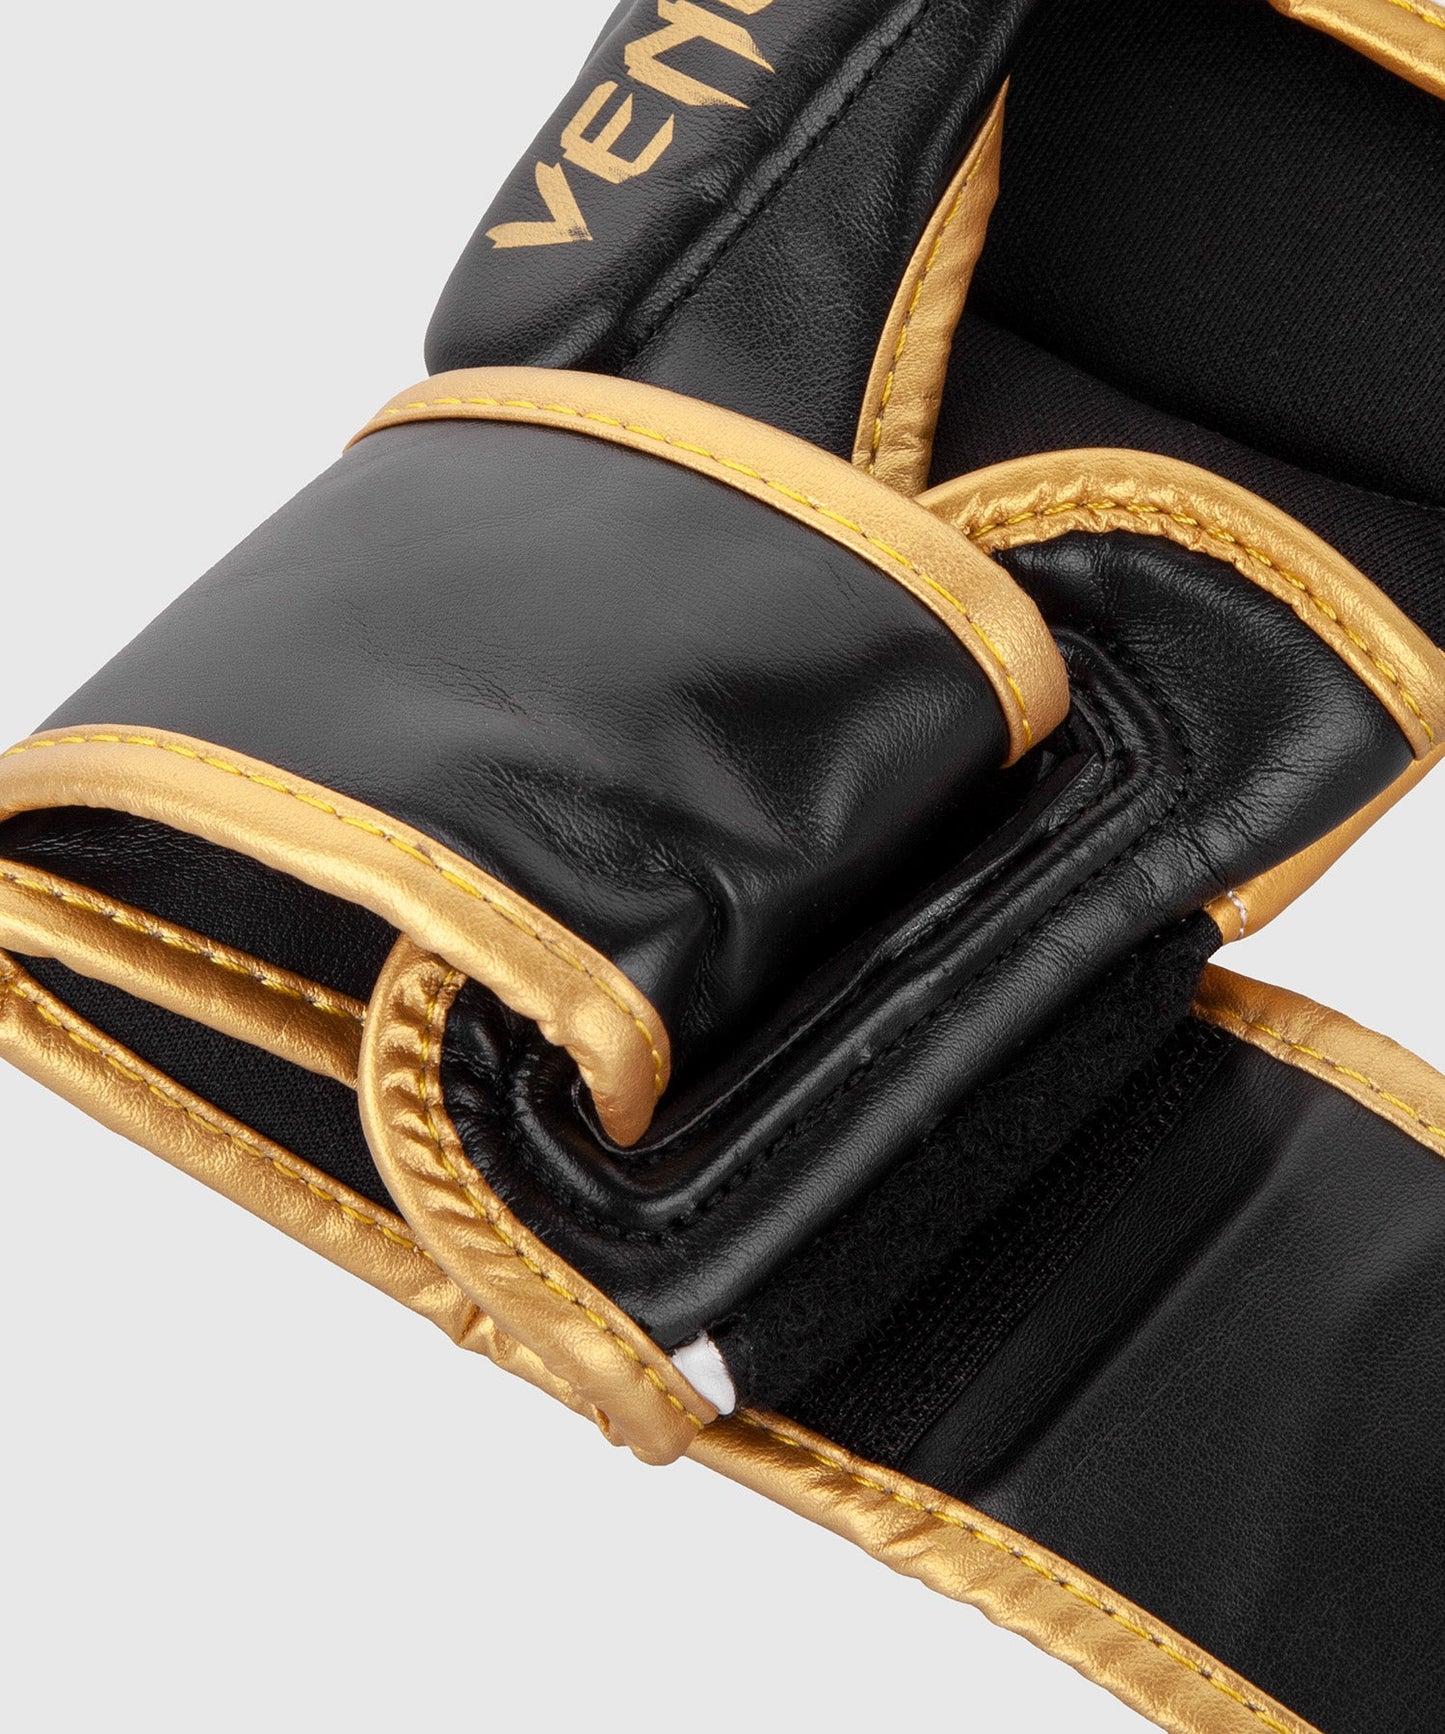 Sparring Gloves Venum Challenger 3.0 - White/Black/Gold